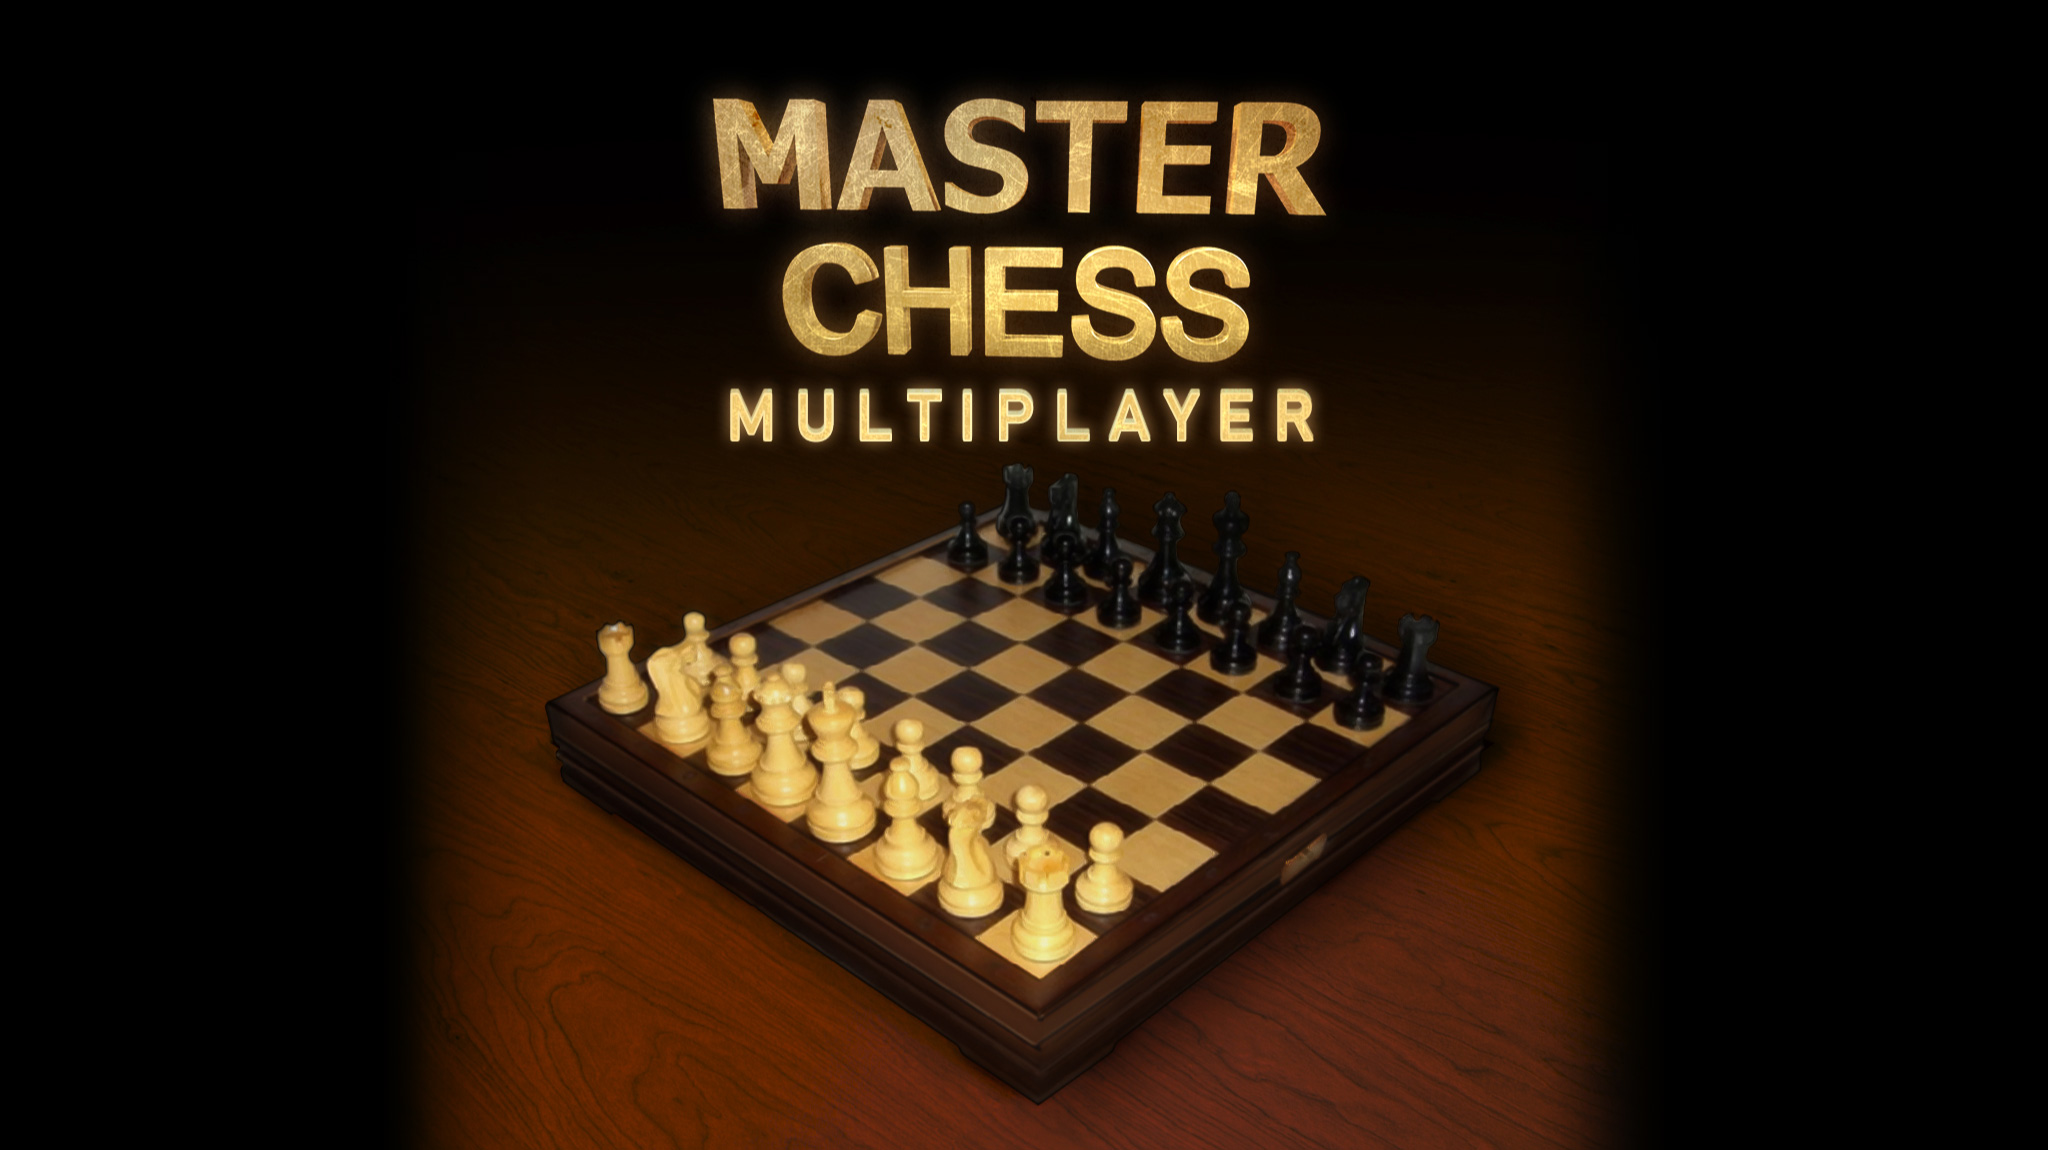 Checkers Classic 🕹️ Jogue Checkers Classic no Jogos123